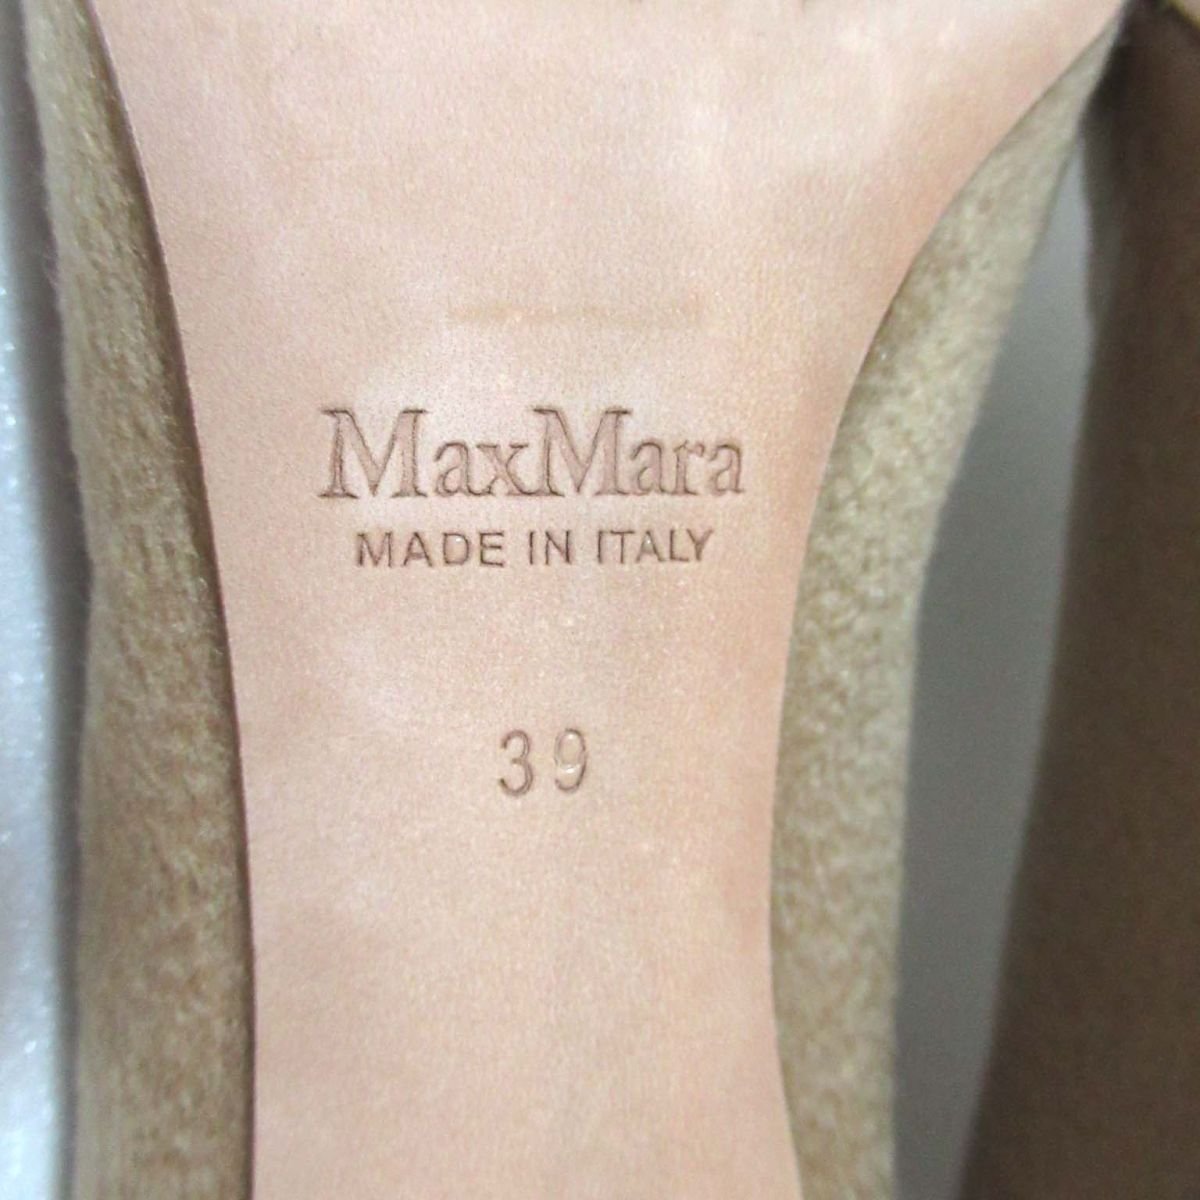  почти не использовался Max Mara Max Mara шерсть po Inte dotu высокий каблук туфли-лодочки I39 размер 24cm соответствует бежевый 